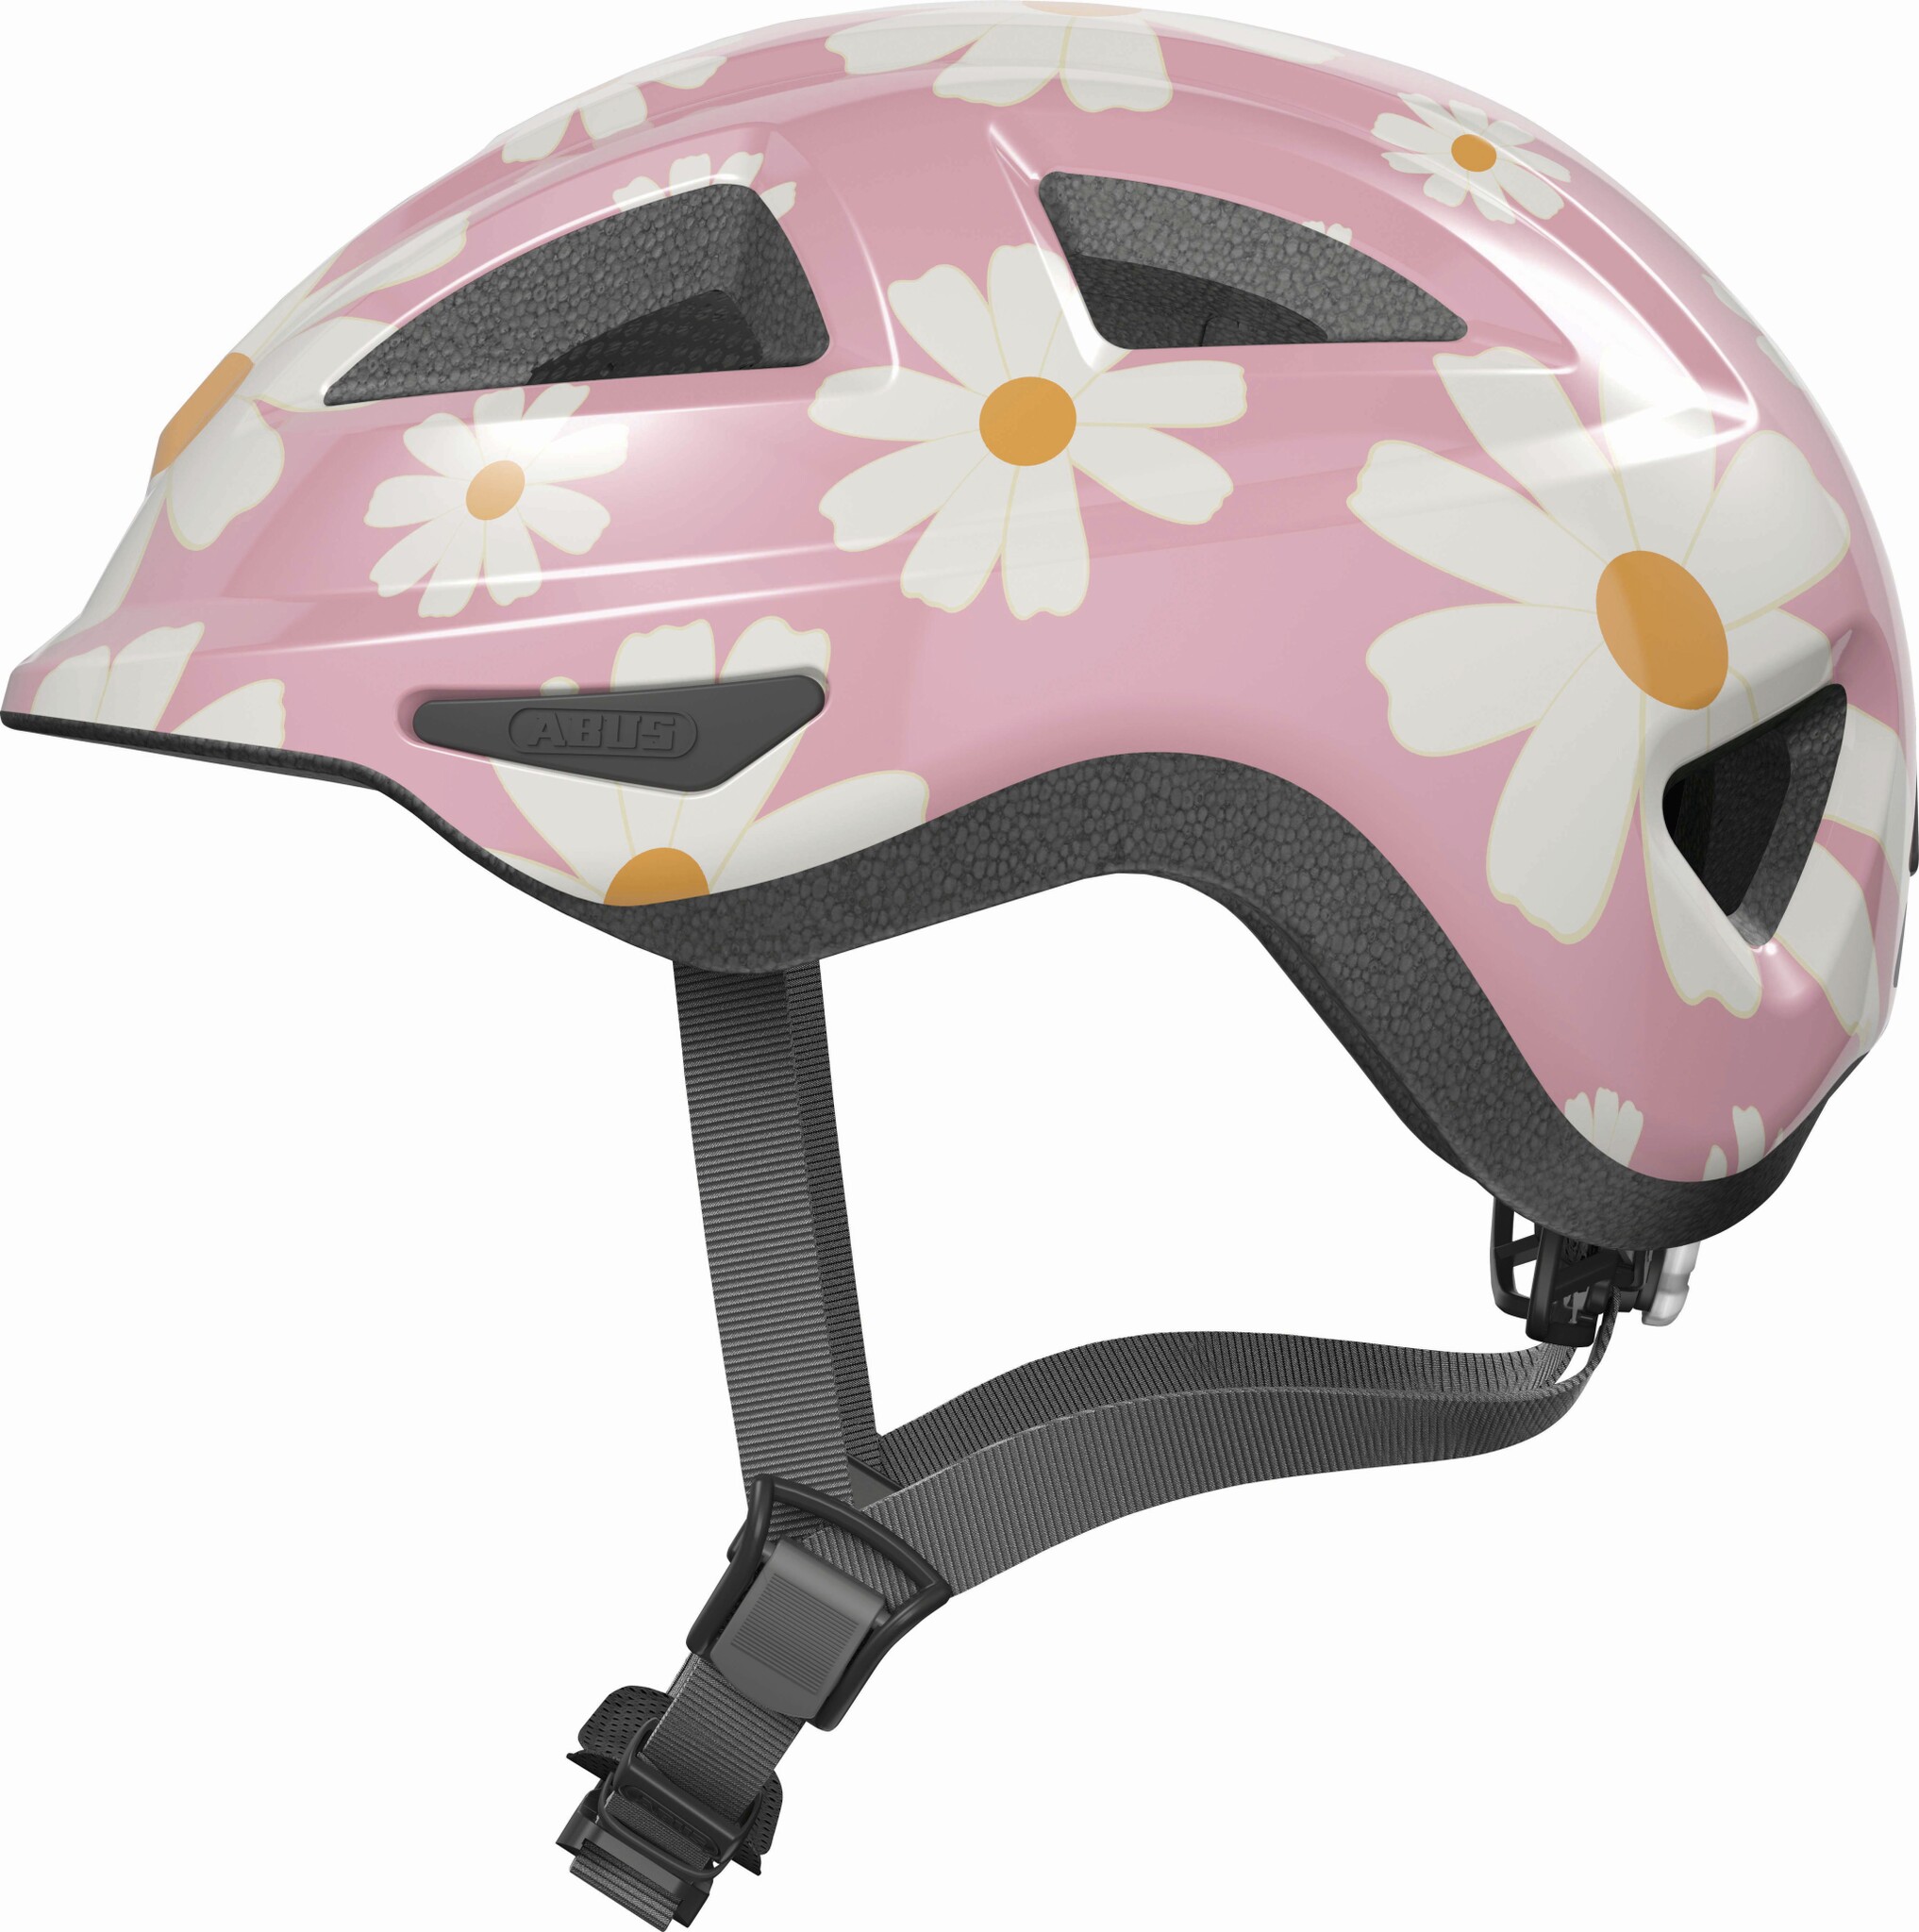 Шлем детский ABUS ANUKY 2.0, размер M, Rose Flower, розовый цветок фото 